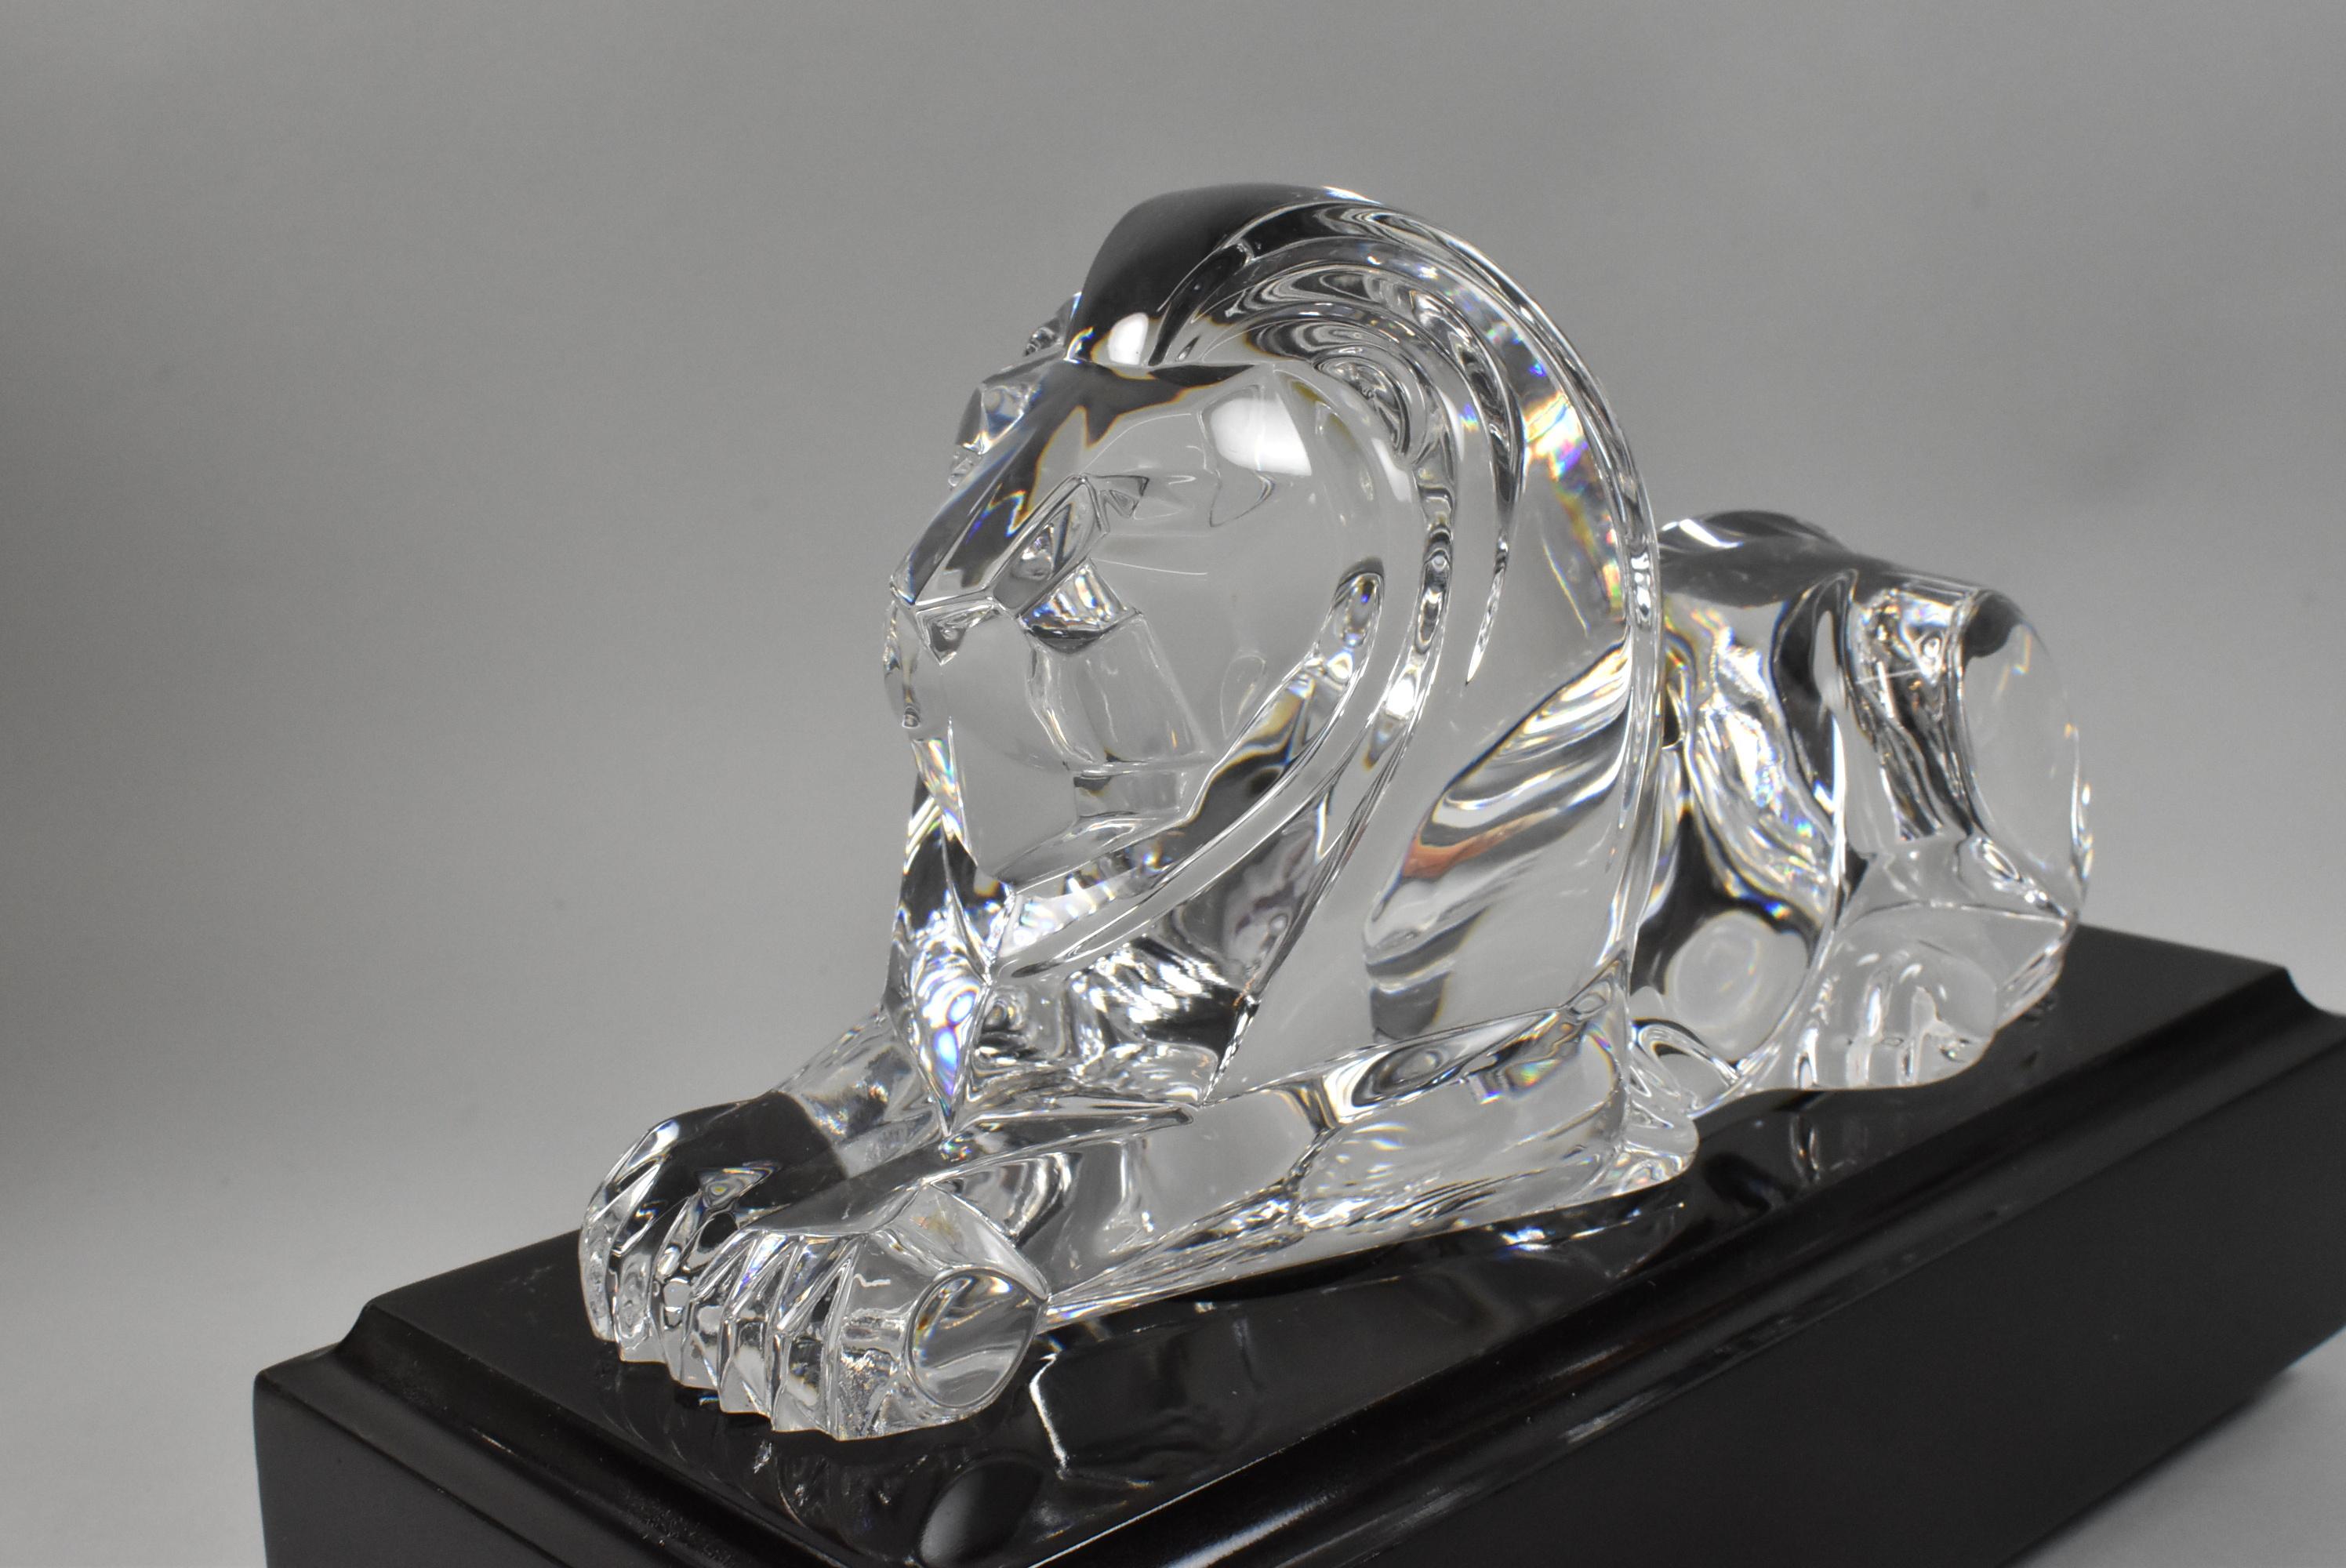 Lion couché en cristal de Steuben avec piédestal et boîte en cuir d'origine. Conçu par Lloyds Atkins vers 1986. Le cristal n'est ni endommagé ni rayé. La boîte en cuir présente quelques traces d'usure.